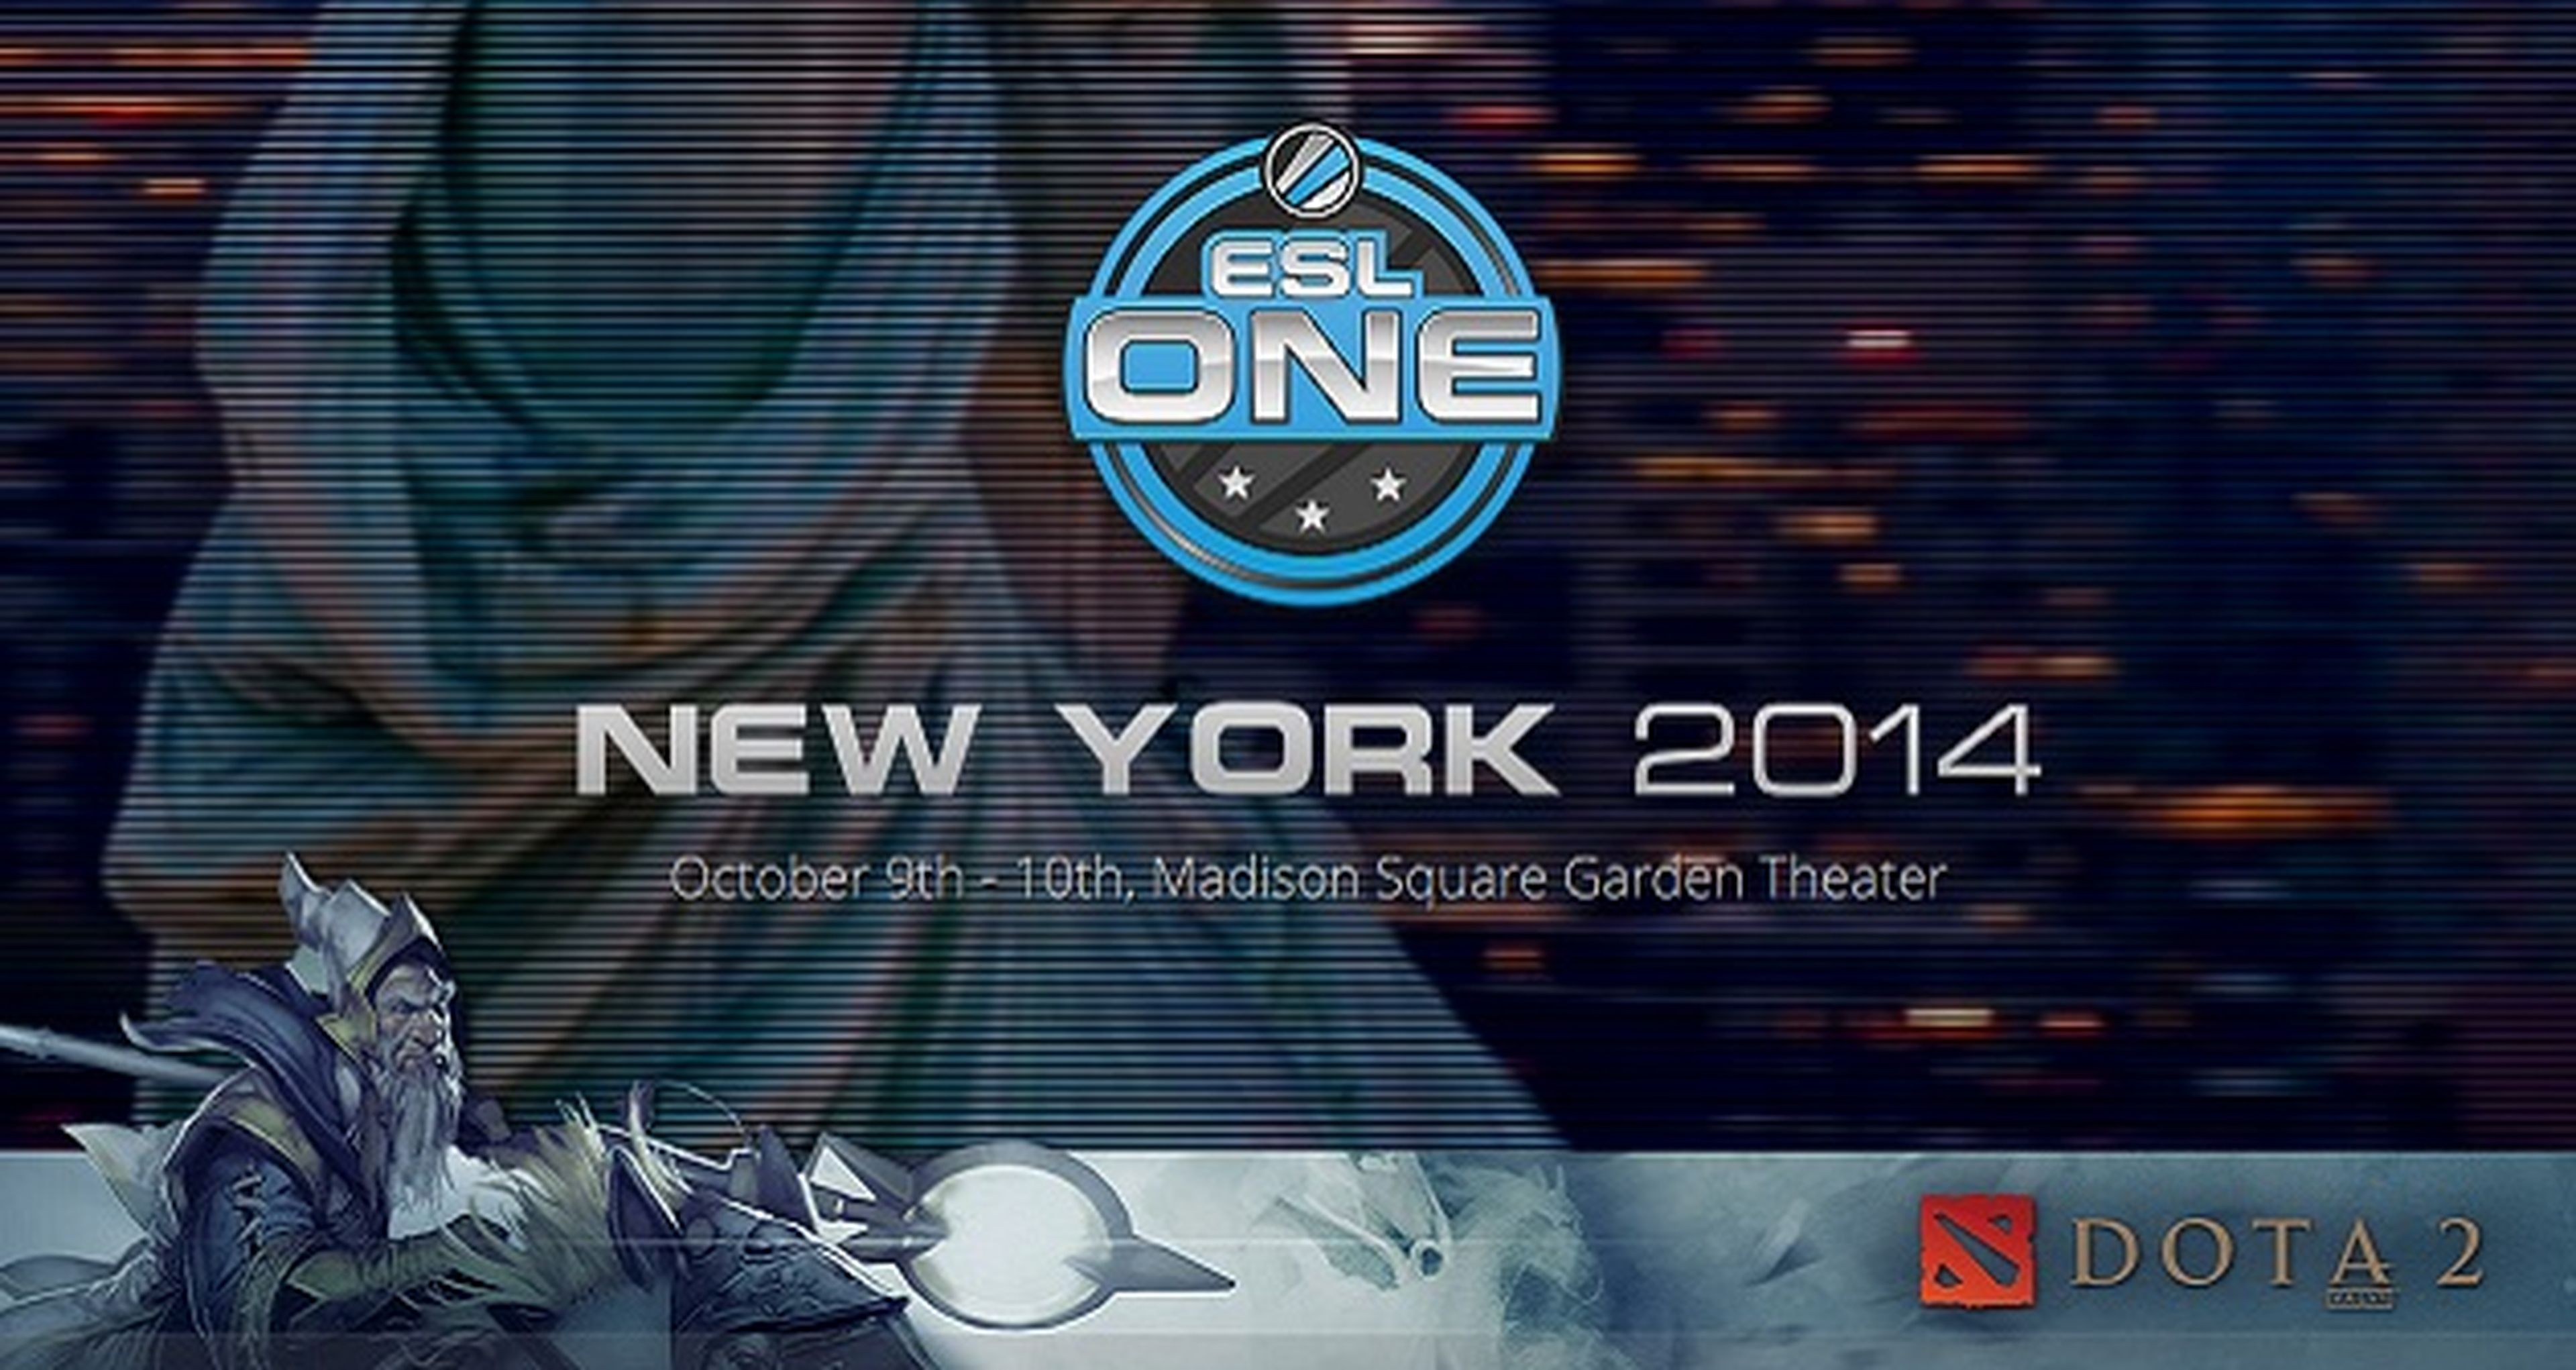 La ESL One de Dota 2 en Nueva York da más detalles